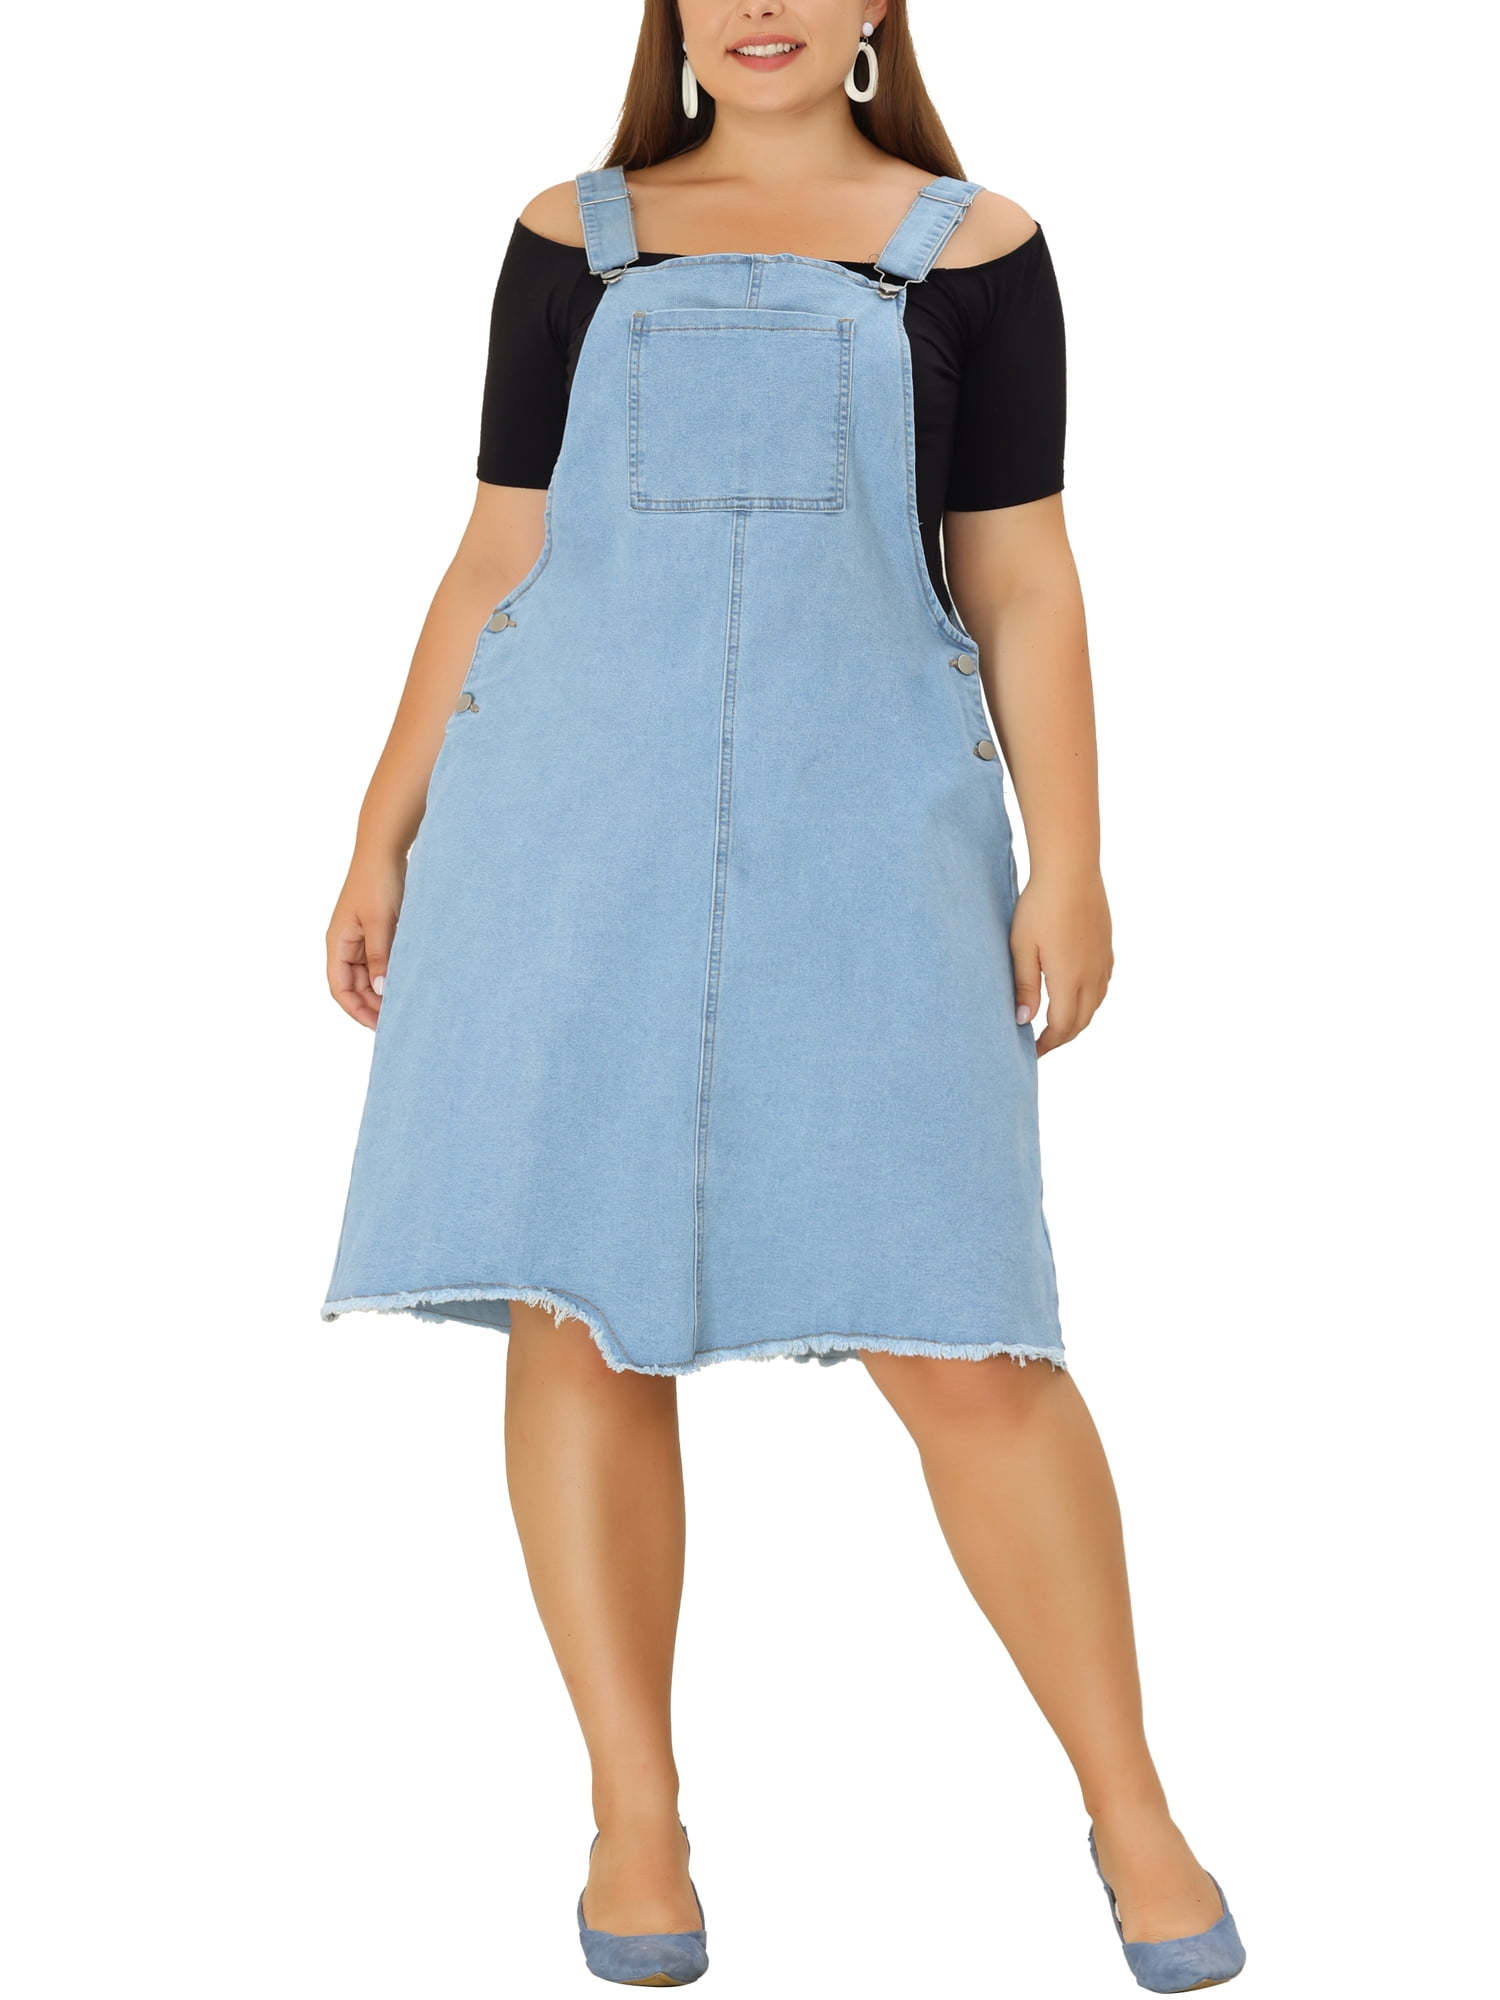 Unique Bargains Women's Plus Size Adjustable Strap Denim Dress - Walmart.com